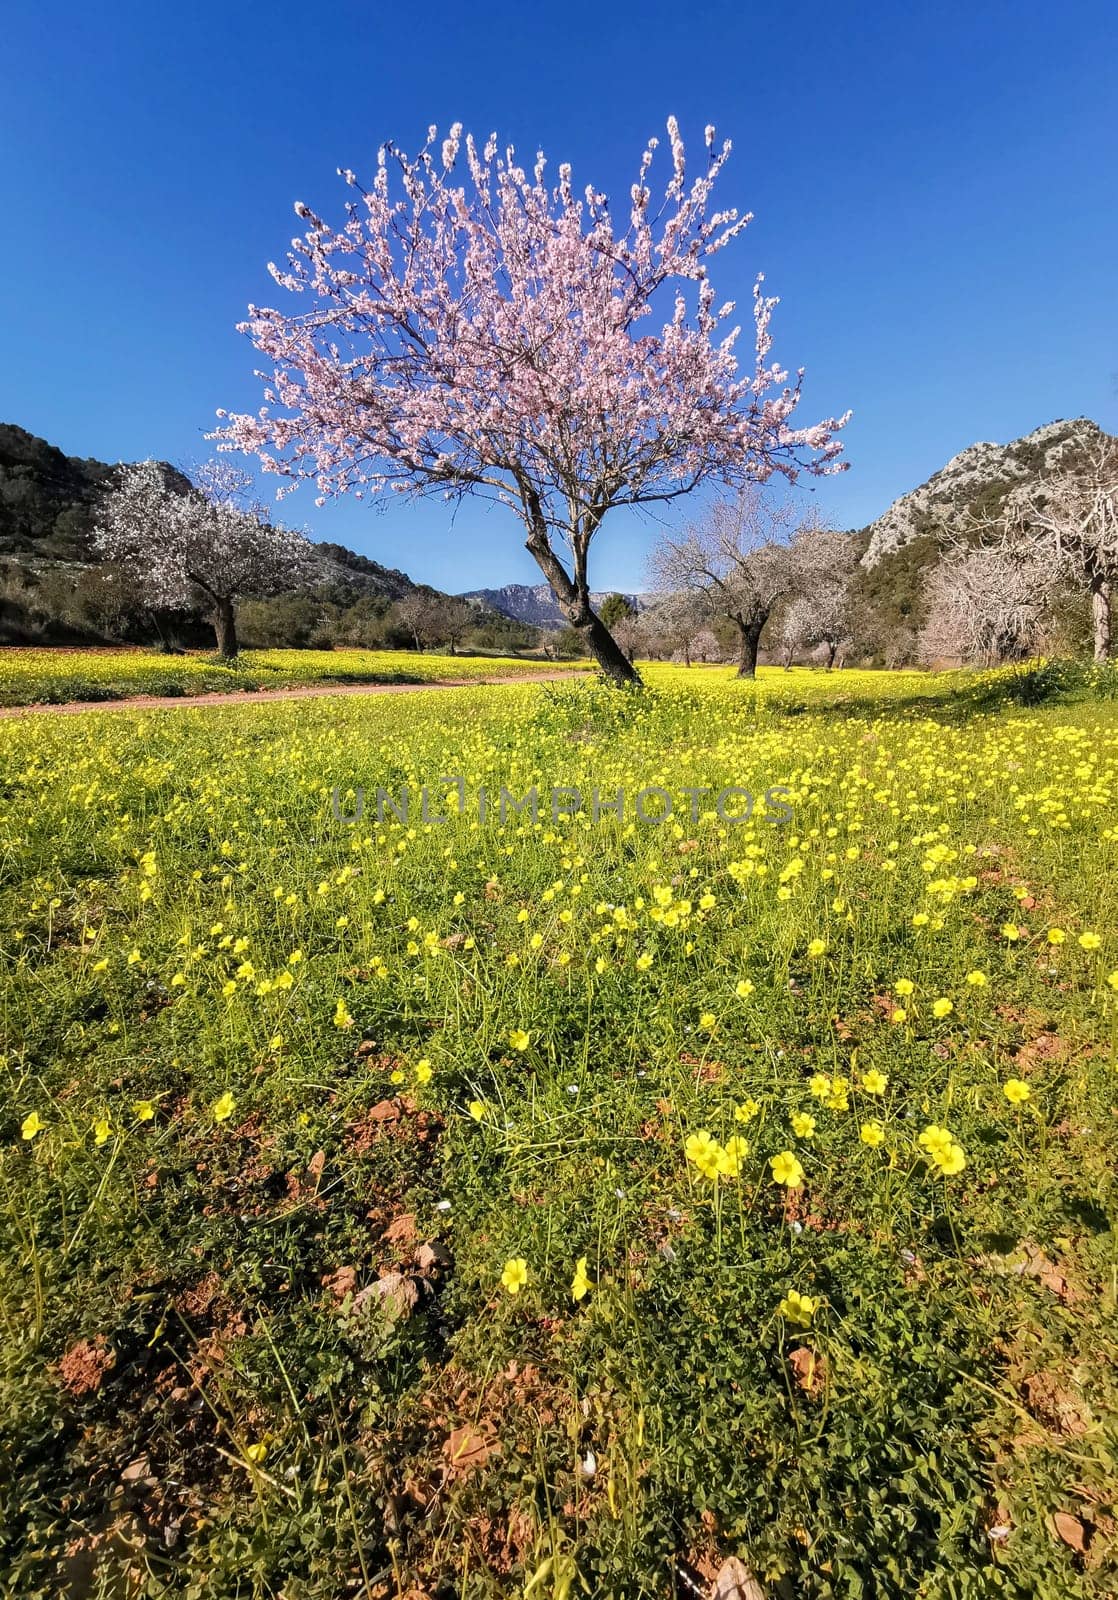 Solemn Bloom: A Single Almond Tree Amidst a Field of Wildflowers by Juanjo39